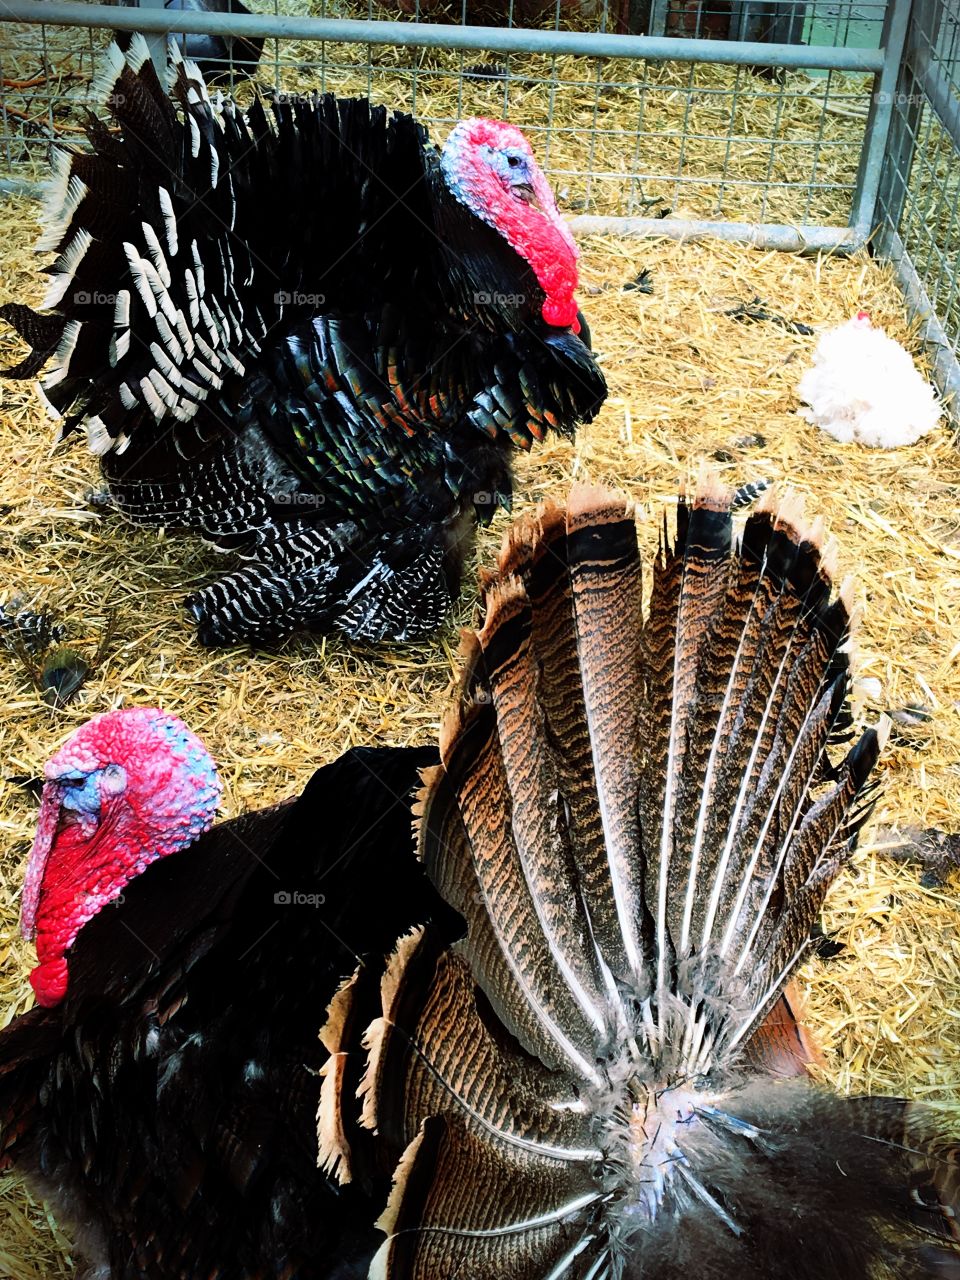 Two plump turkeys in a barn
